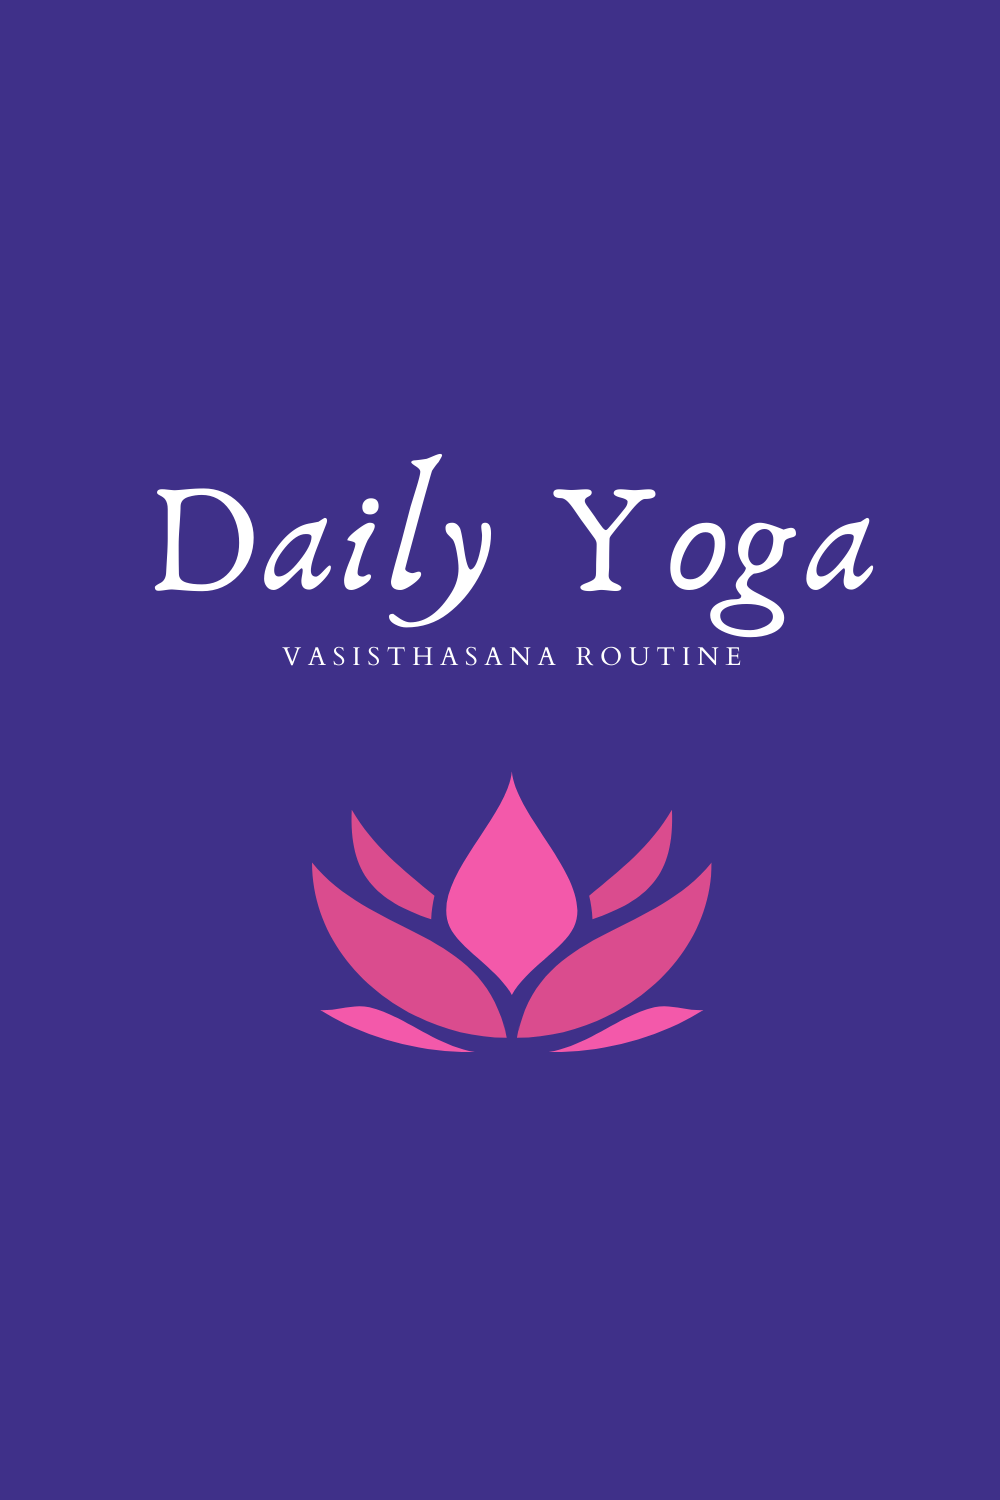 Daily Yoga Vasisthasana